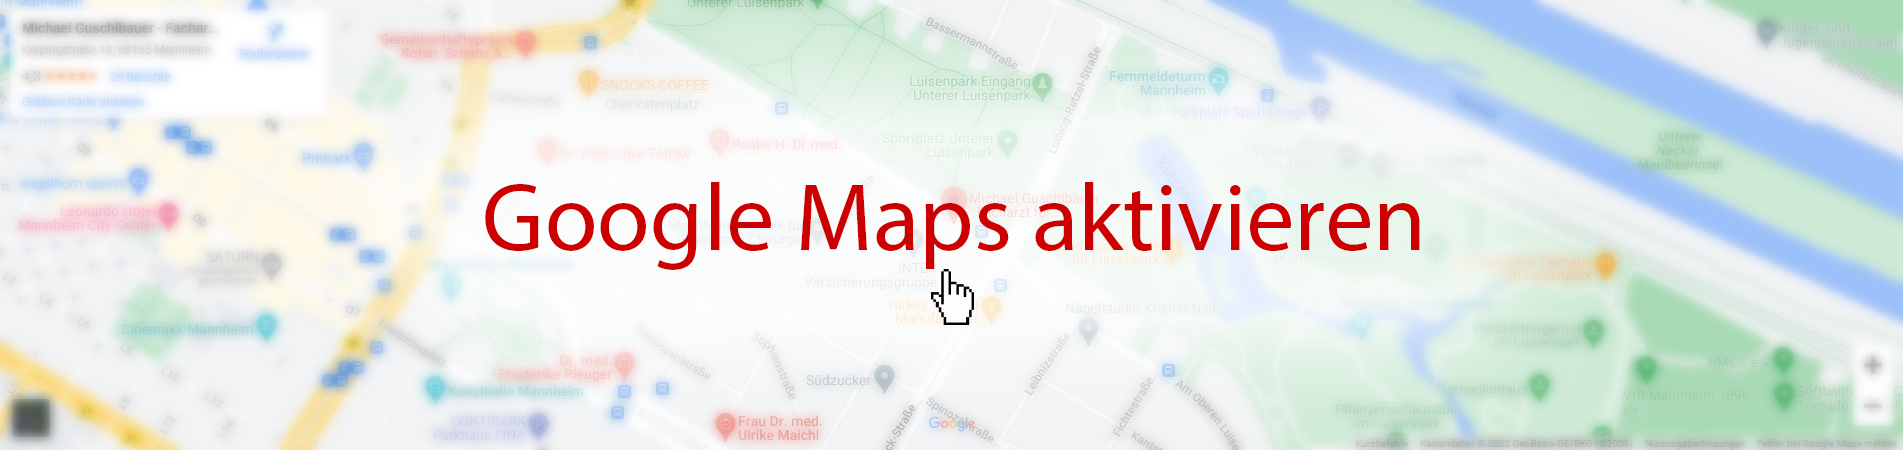 Starten Sie Google Maps mit einem Klick